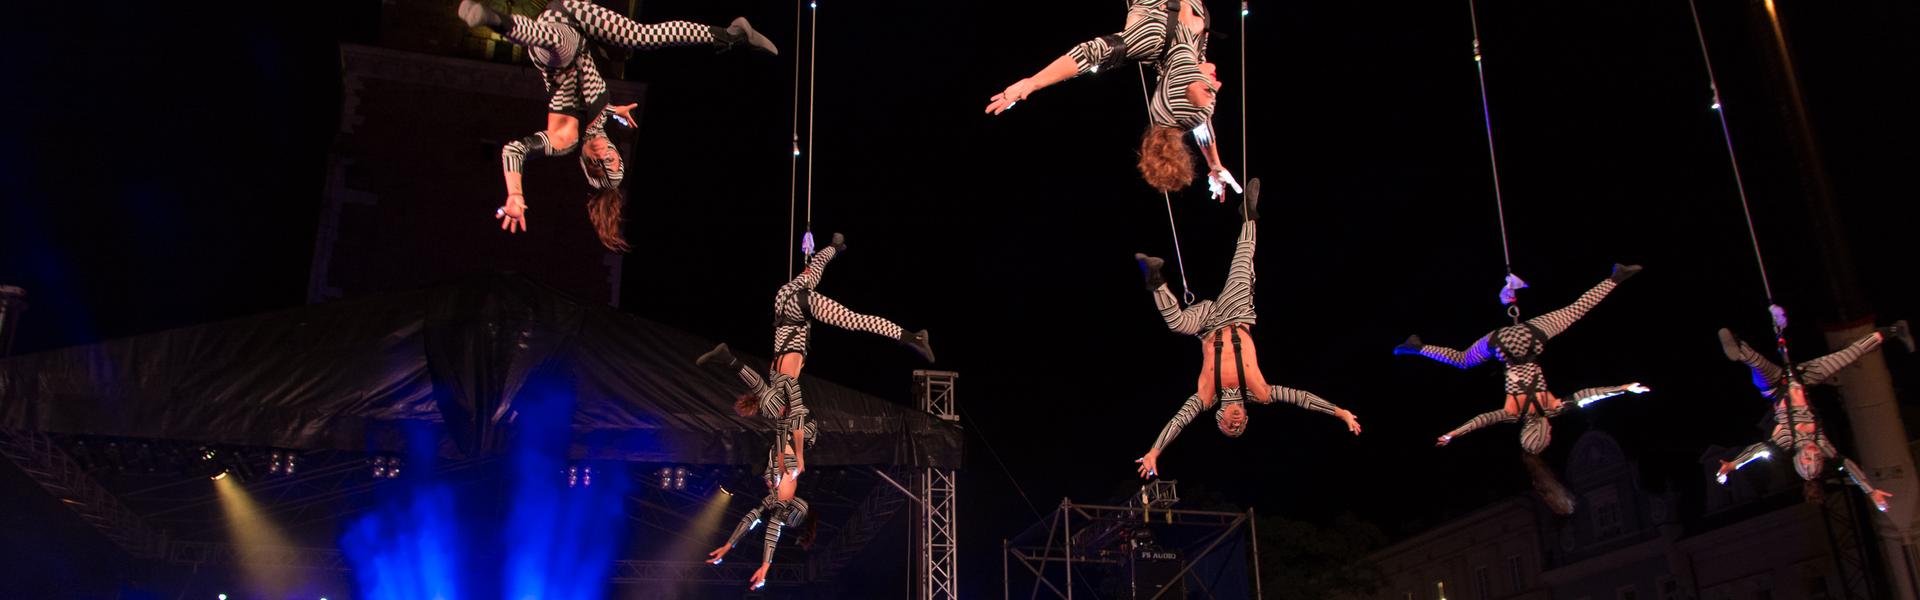 Kostümierte Schauspieler hängen kopfüber an Seilen über einer Menschenmenge während eines Theaterfestivals. Es ist dunkel, daneben gibt es eine blau beleuchtete Bühne.